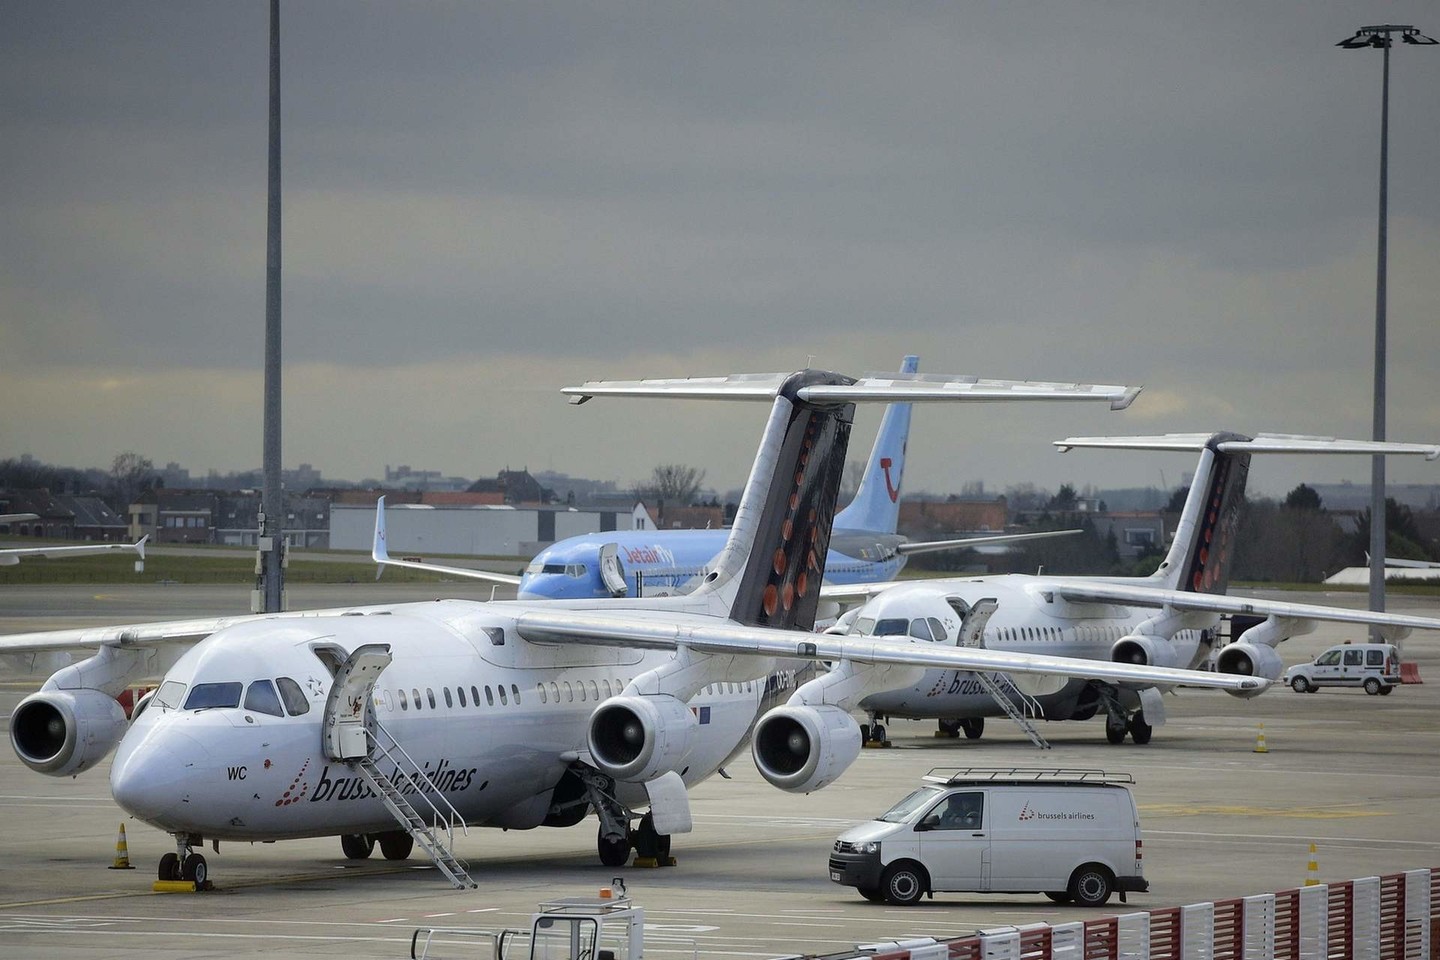 Skrydžiai į Vilnių buvo nutraukti po antradienio teroro akto Briuselio oro uoste.<br>AFP/Scanpix nuotr.